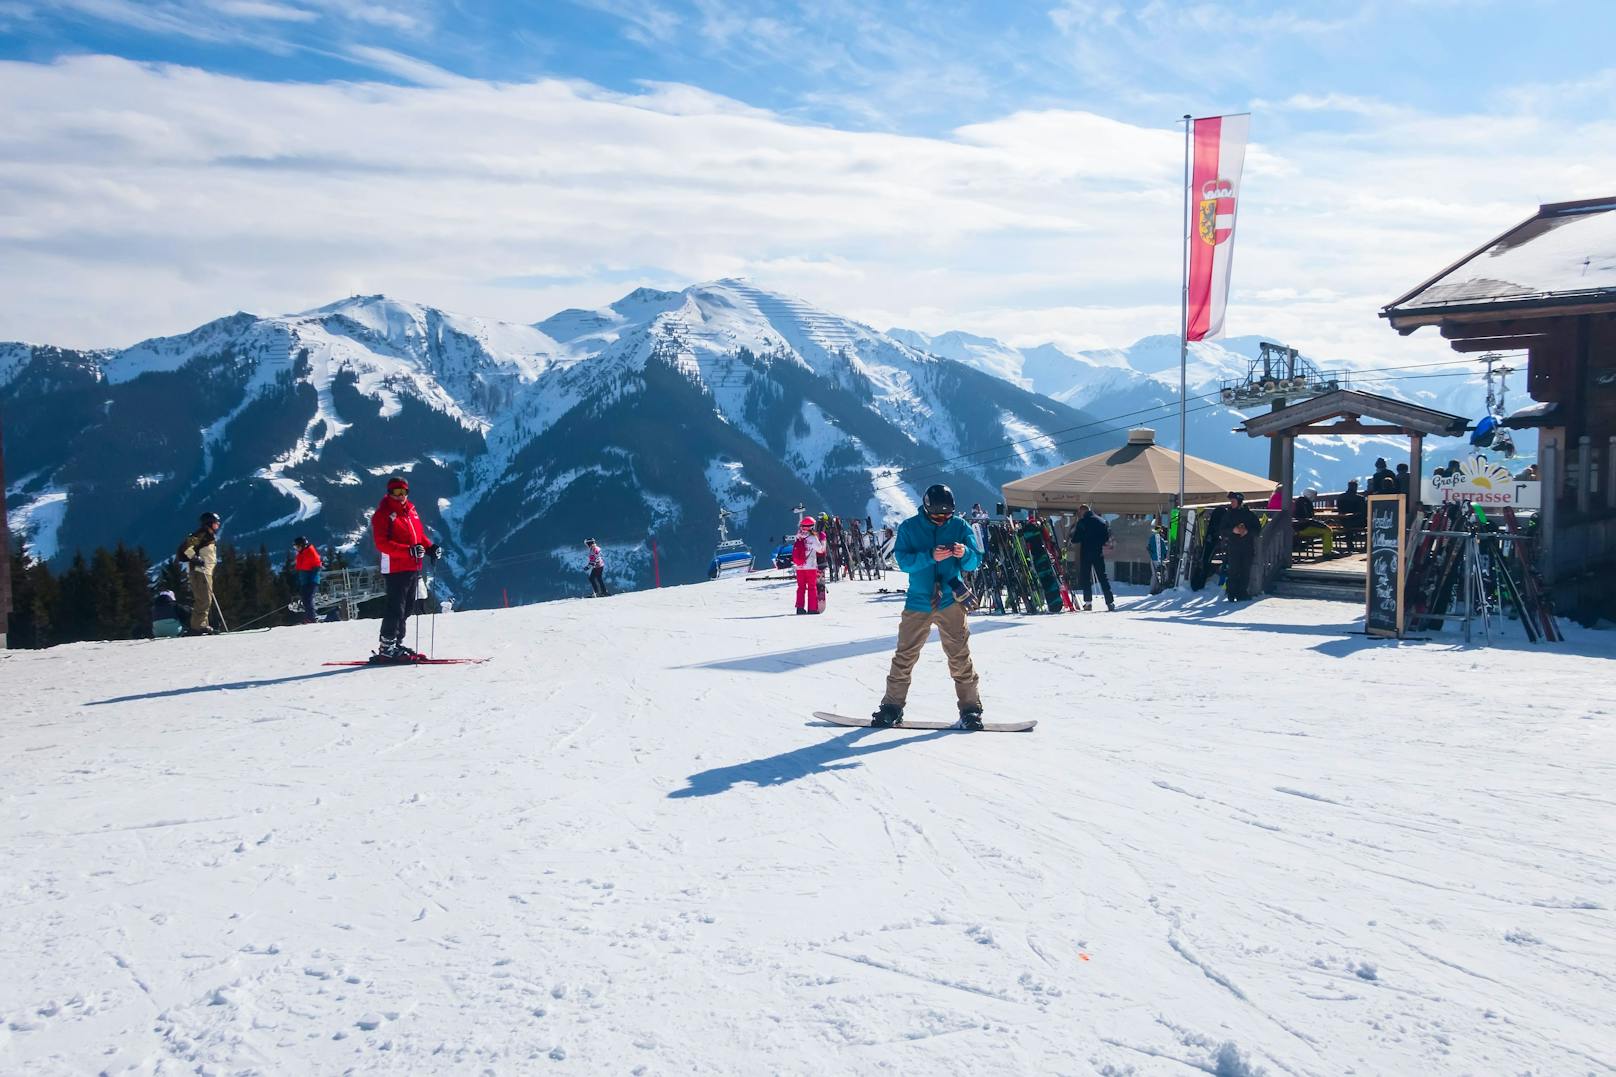 Rätselhafter Tod auf Salzburger Skipiste  geklärt